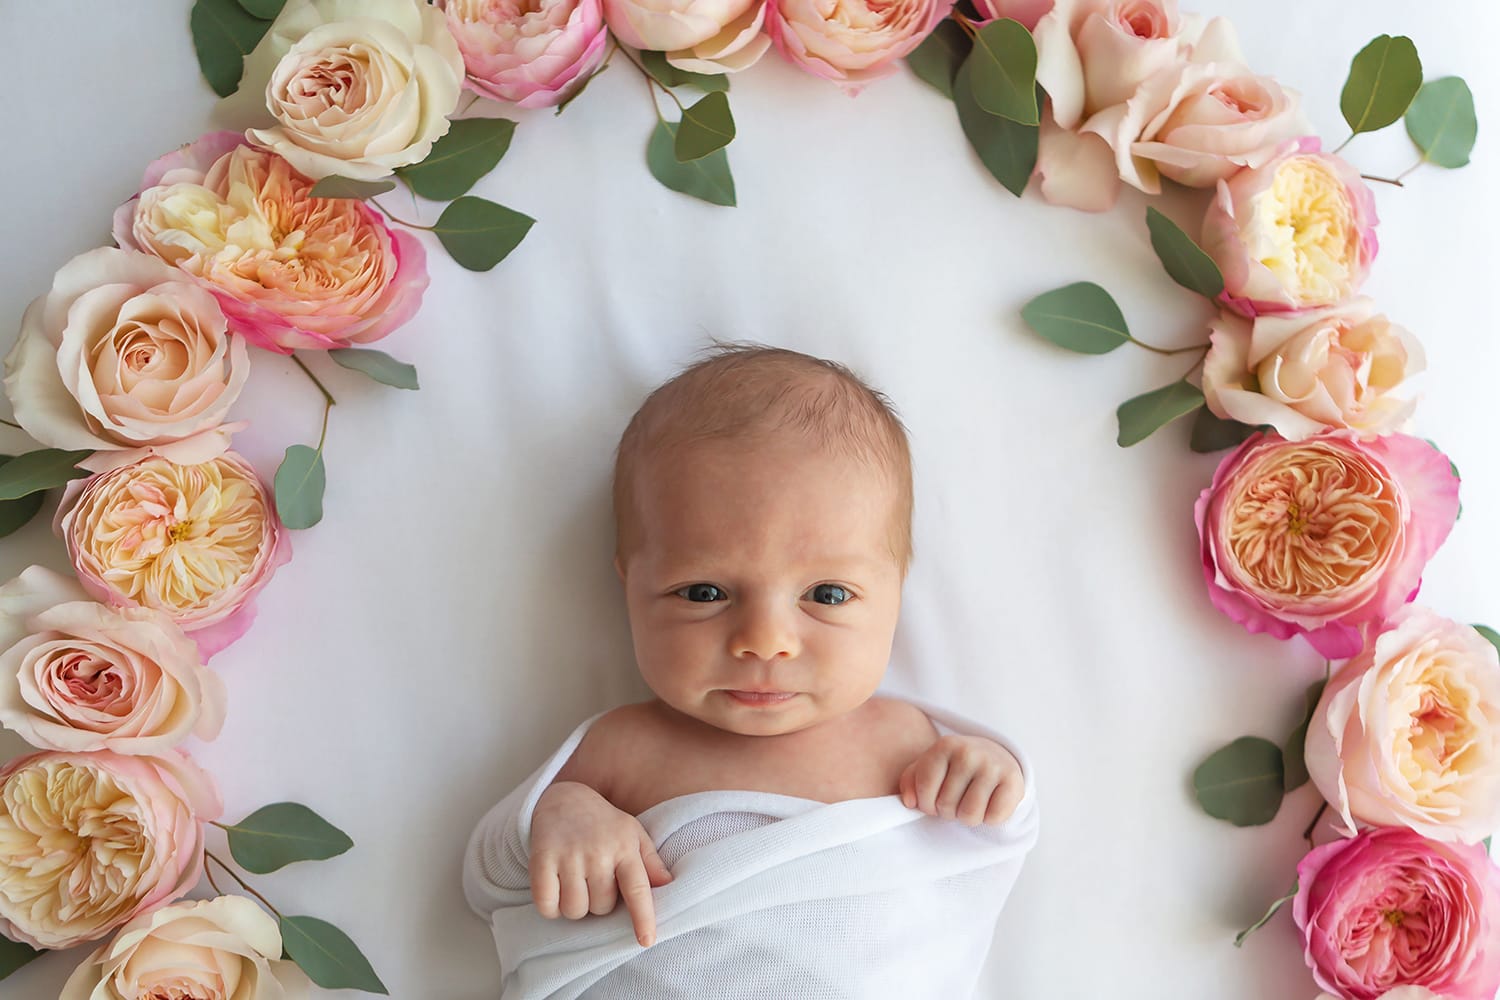 Inspiration pour la séance photo de bébé pour les fleuristes